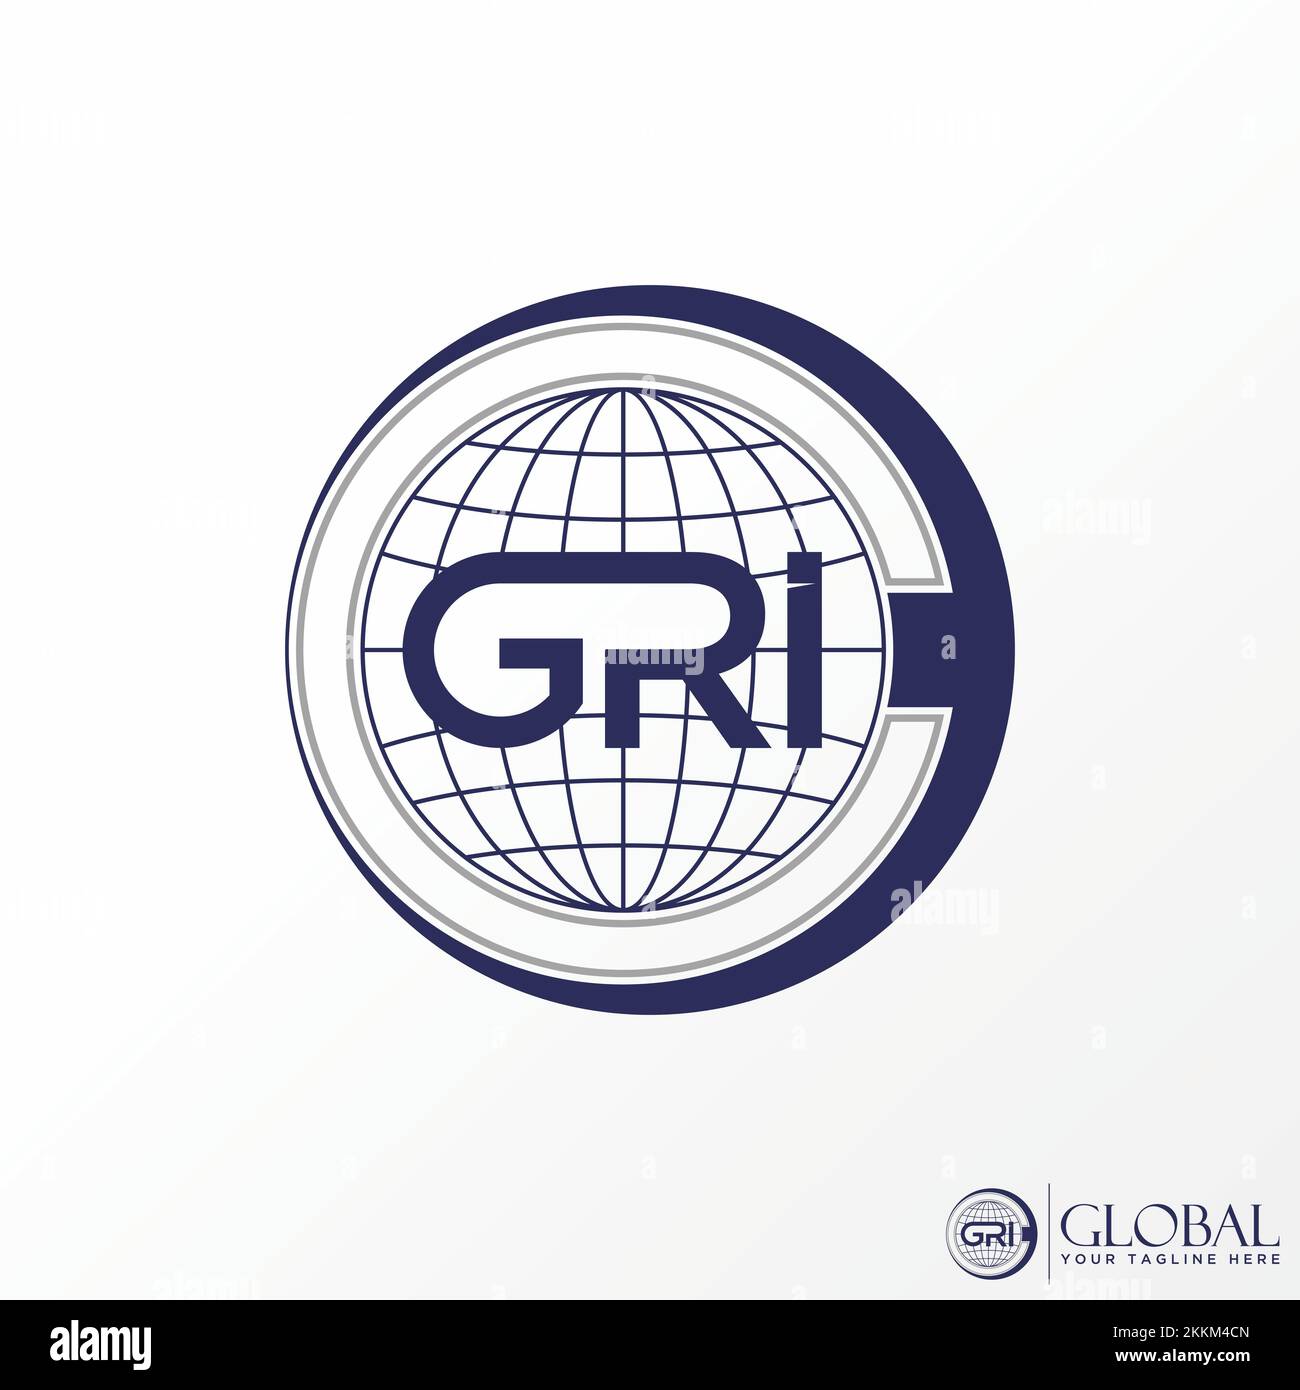 Globus-ähnlicher Buchstabe C mit Wort GRI-Schriftart auf Connect Shape Bild Grafik Symbol Logo Design abstraktes Konzept Vektormaterial. Bezieht sich auf Gruppe oder Maps Stock Vektor